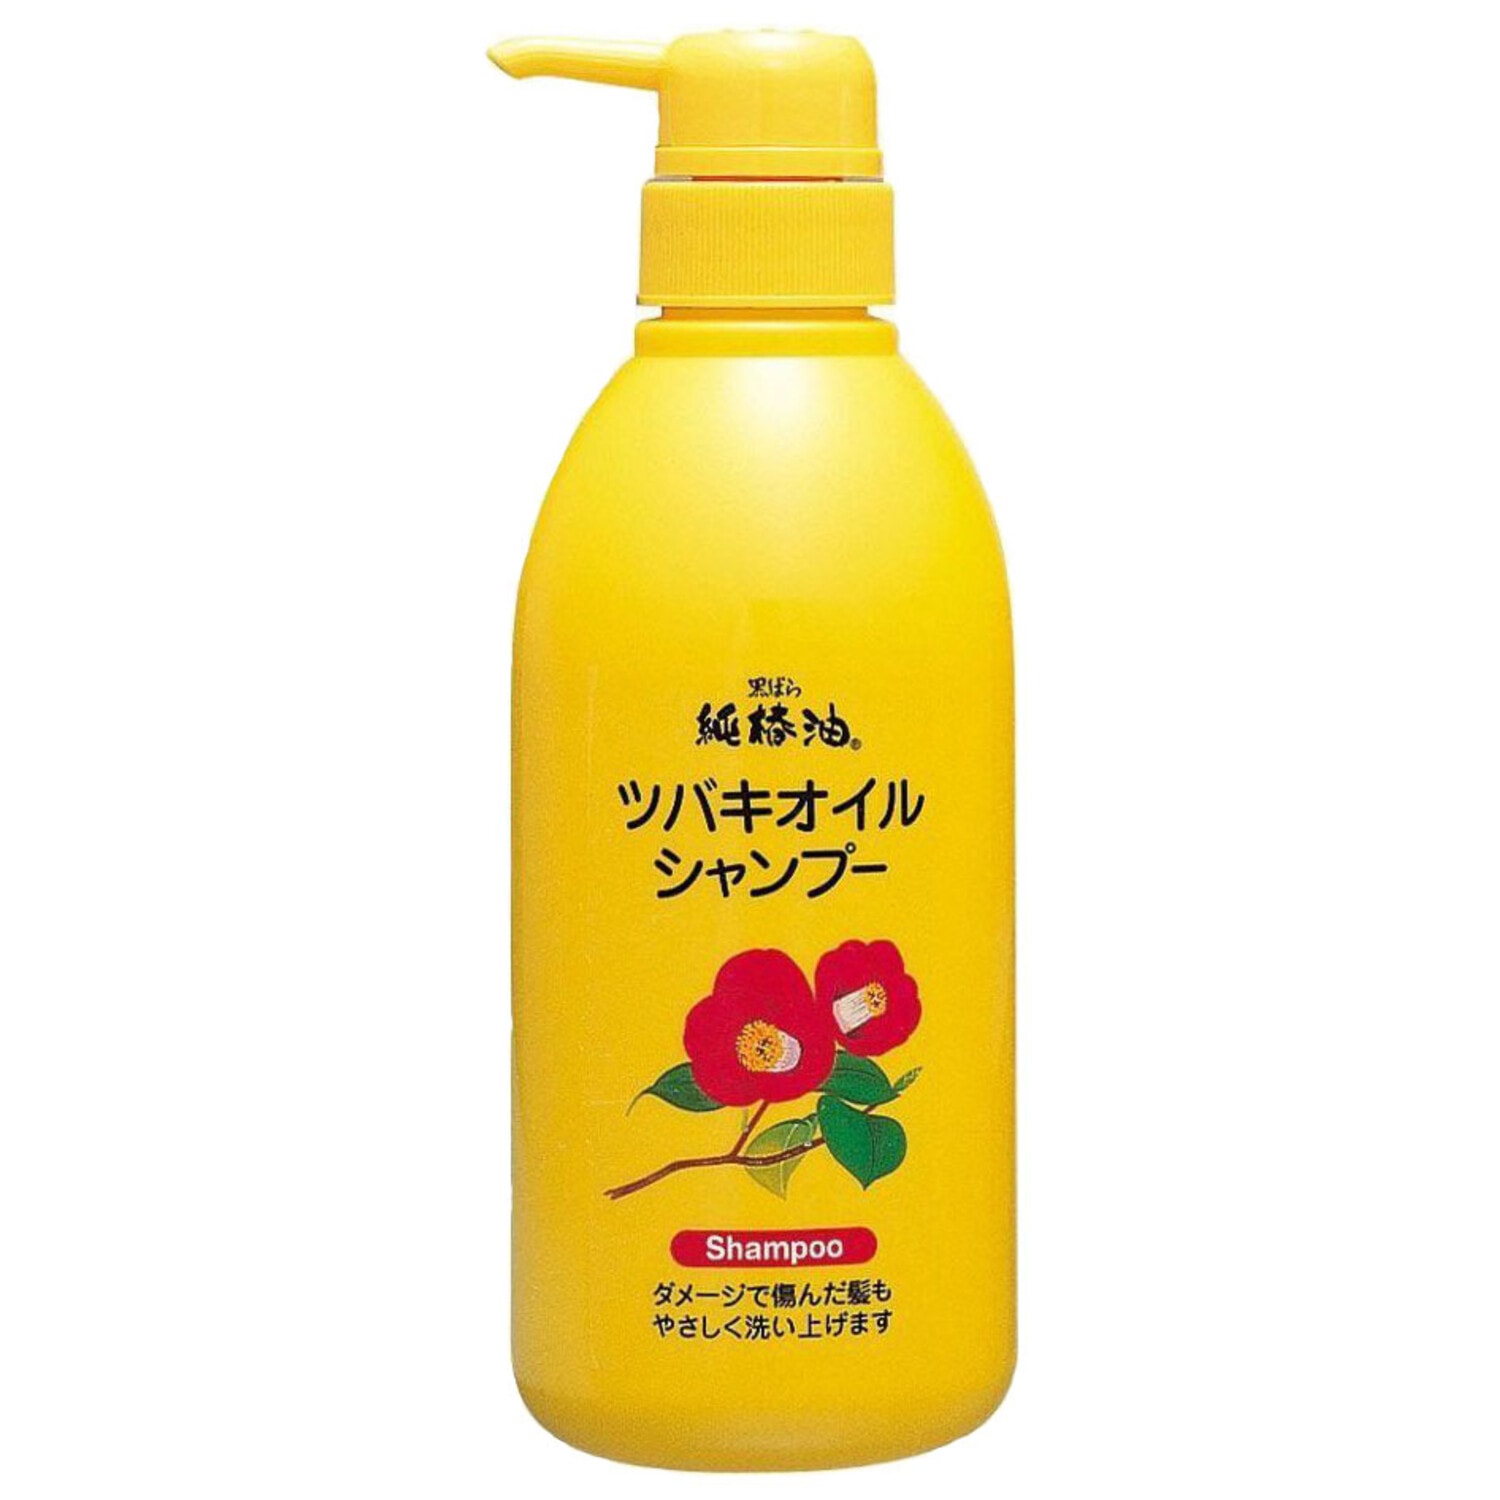 KUROBARA “Camellia Oil Hair Shampoo"  Шампунь для поврежденных волос с маслом камелии японской 500 мл. / 972706